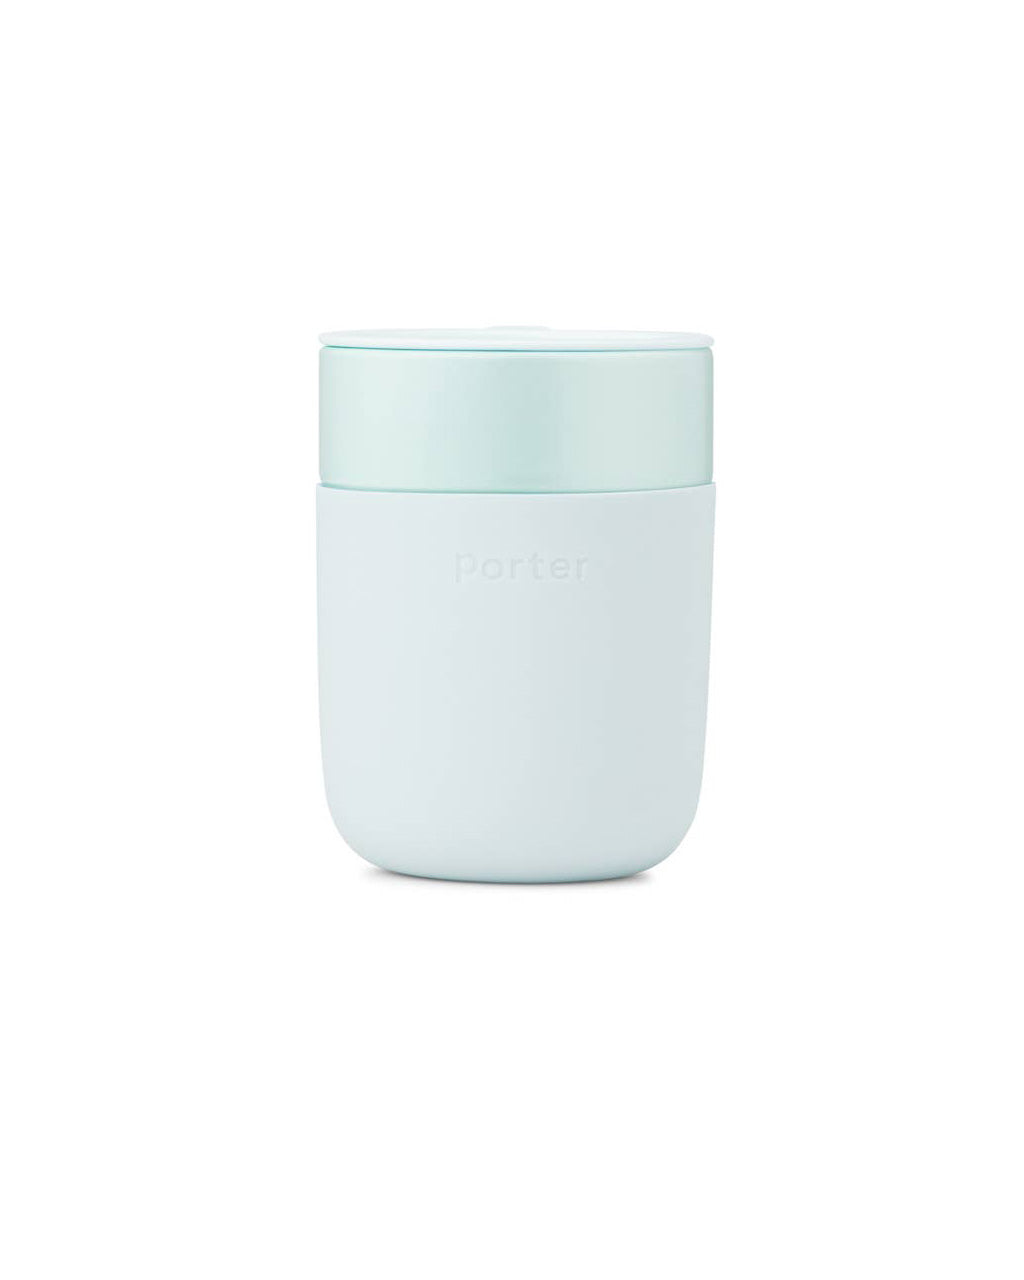 http://www.bando.com/cdn/shop/products/bando-3p-wp-porter-ceramic-mug-mint-01.jpg?v=1680617467